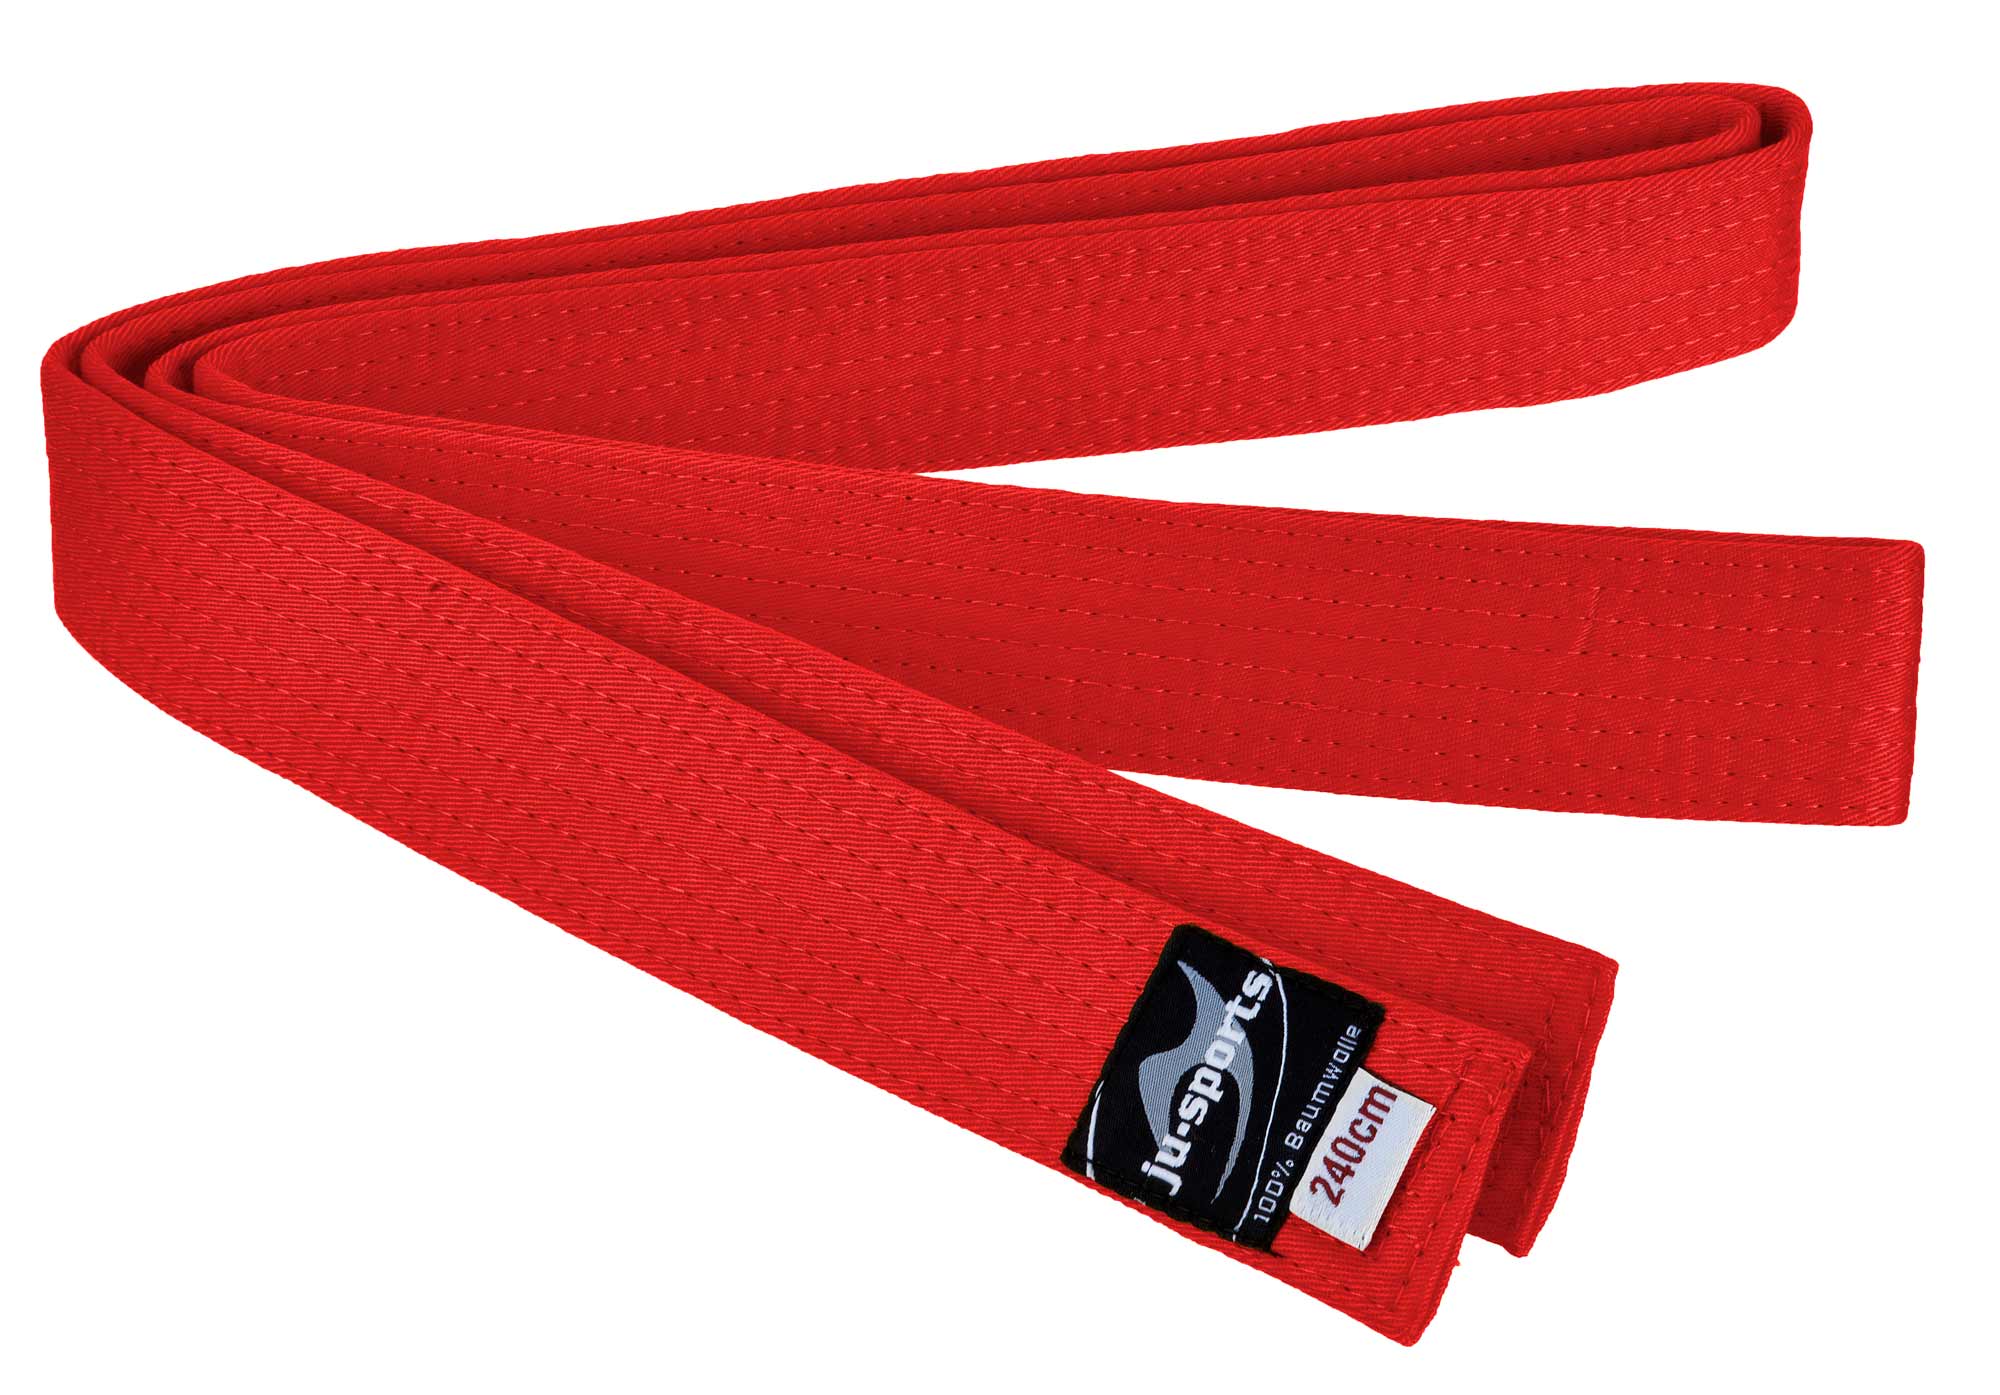 Ju-Sports budo belt red